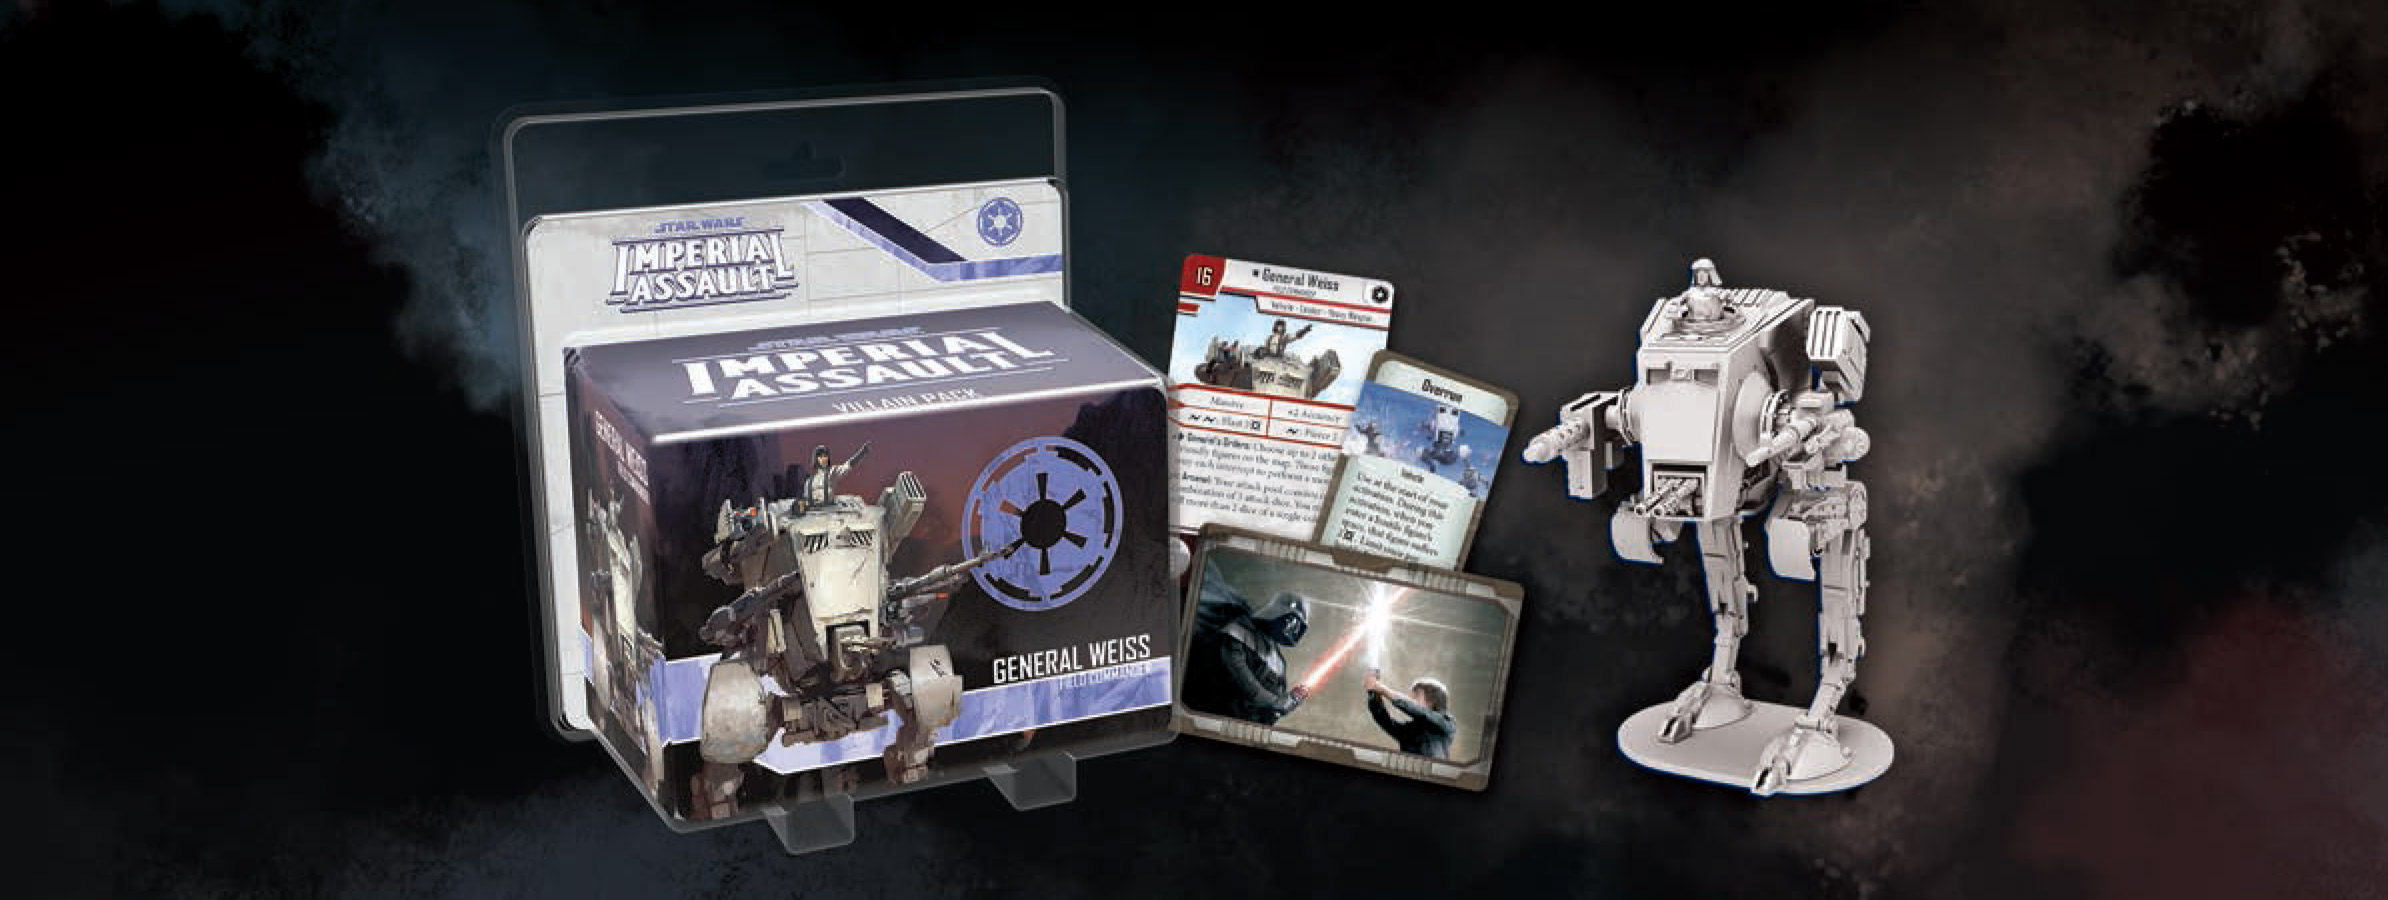 New! Star Wars Imperial Assault General Weiss Villain Pack 